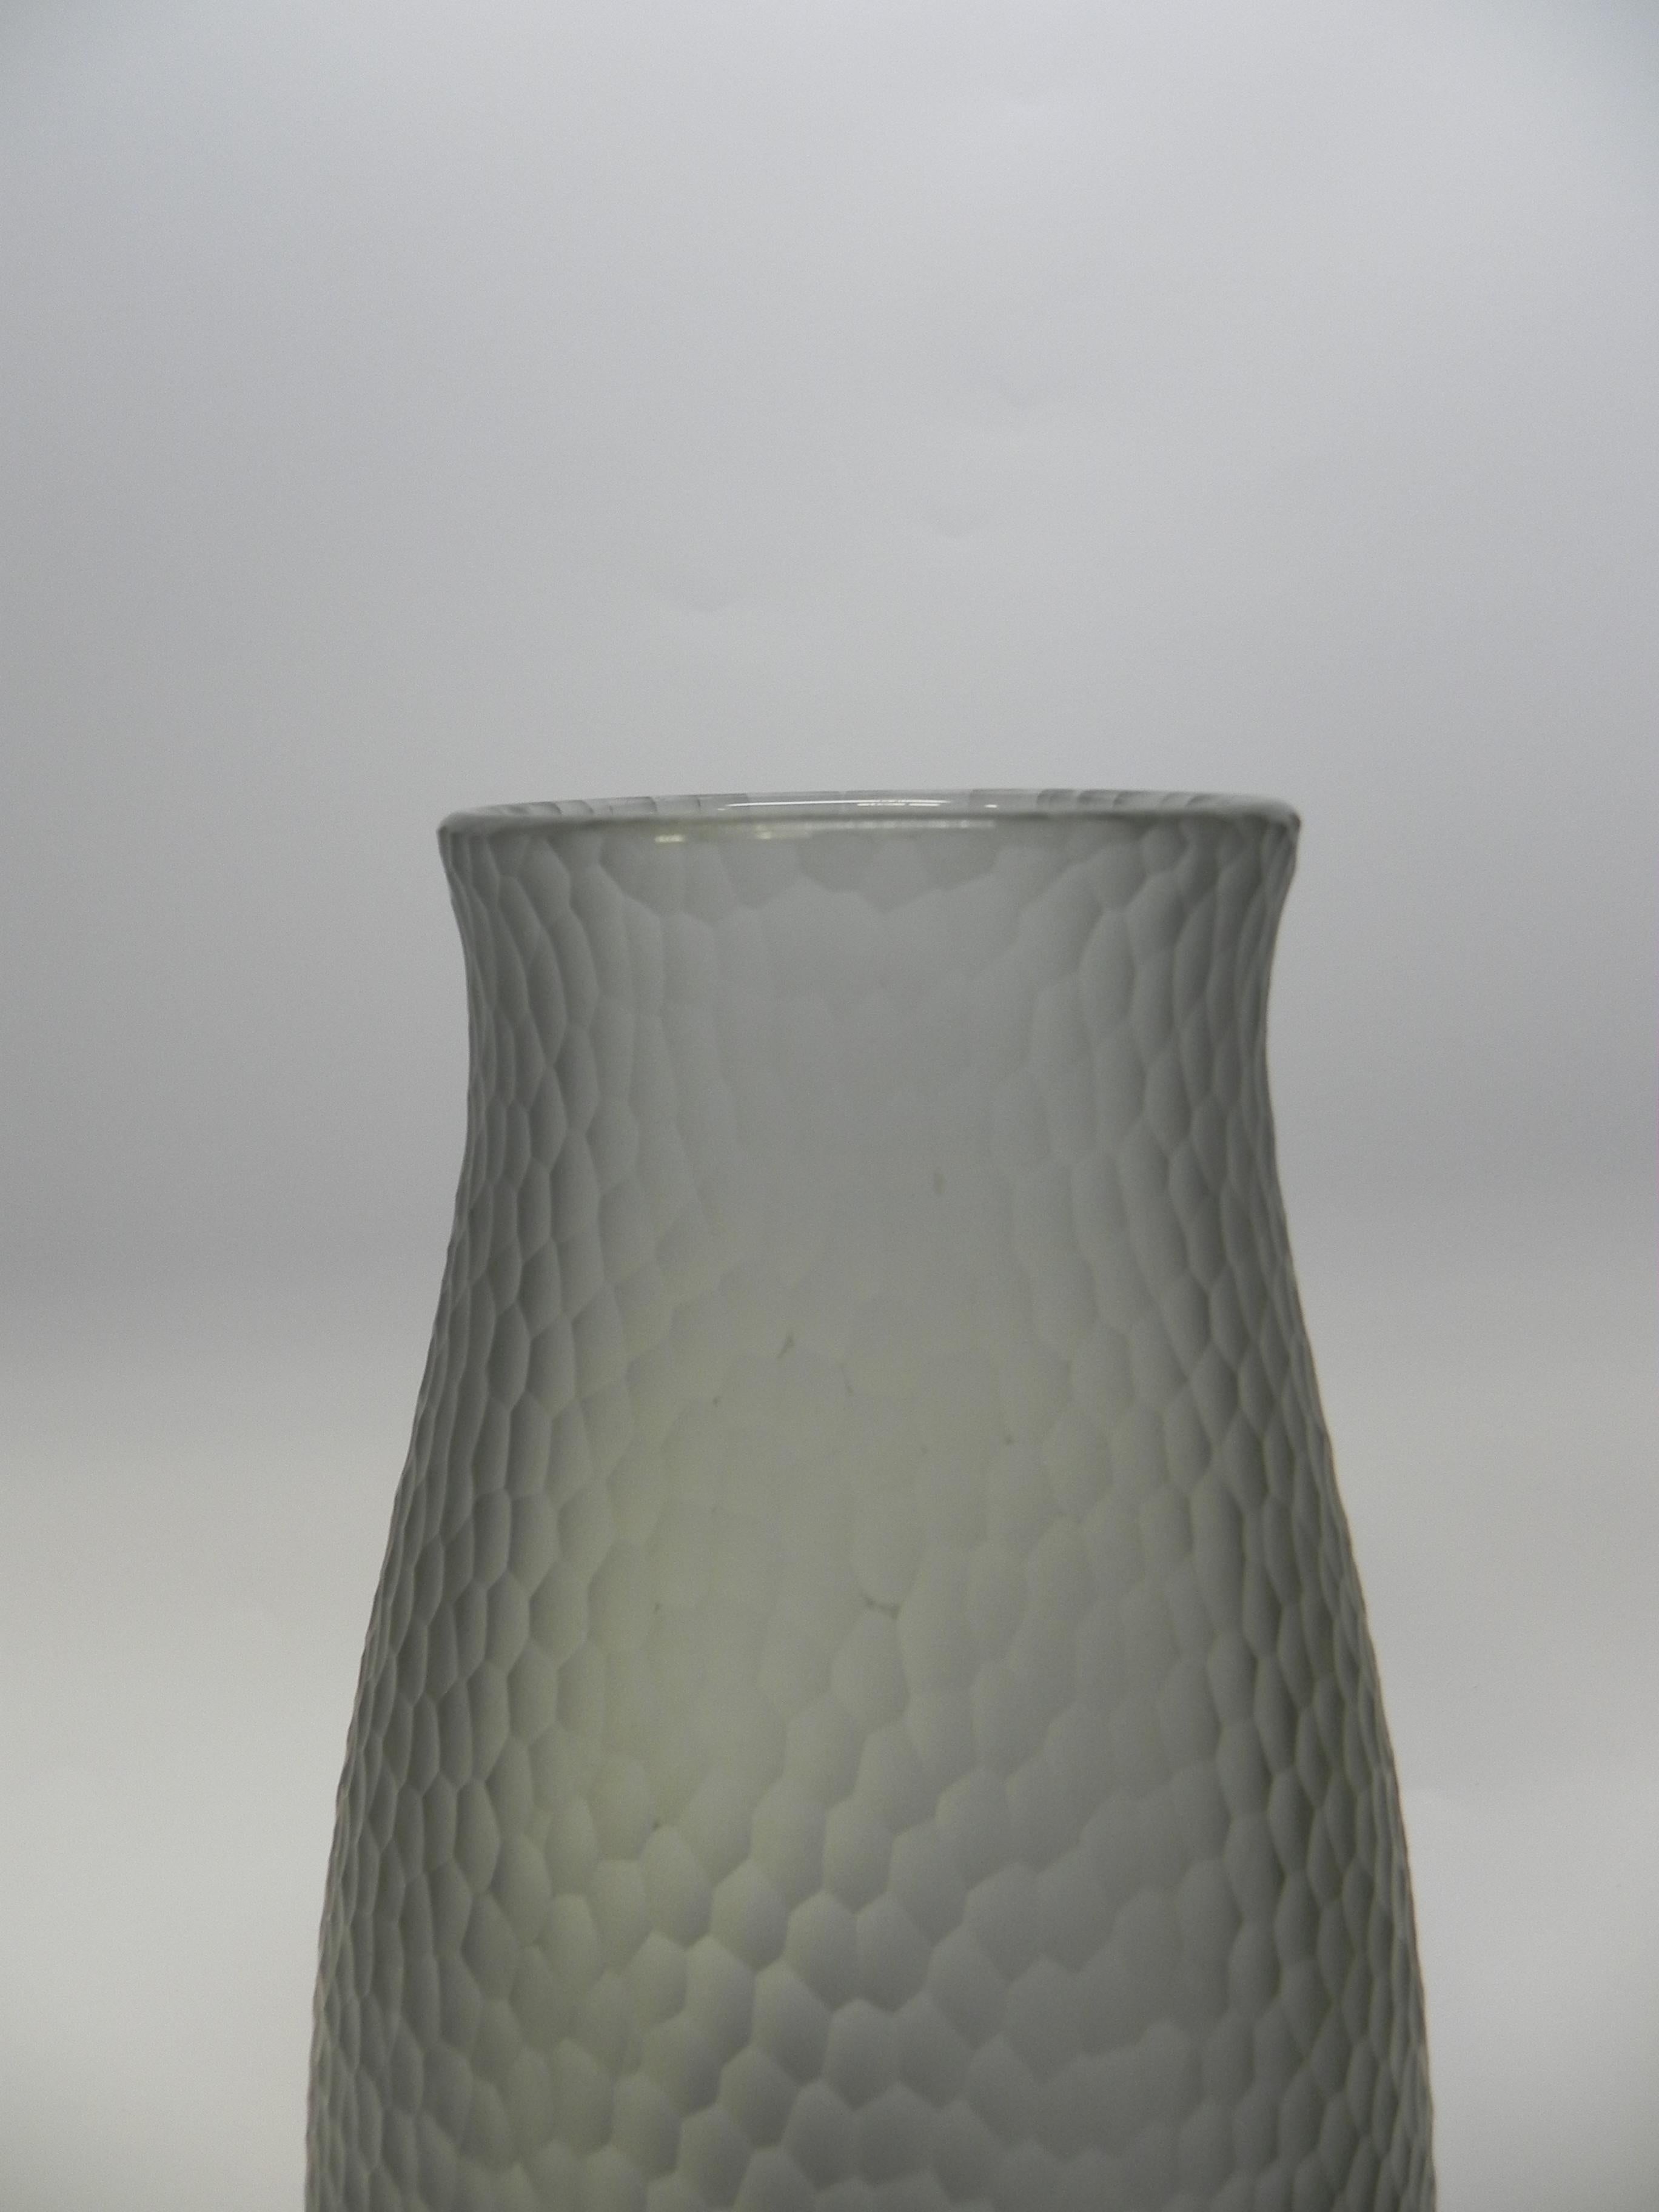 Big Carlo Scarpa Venini Murano Glass Vase 